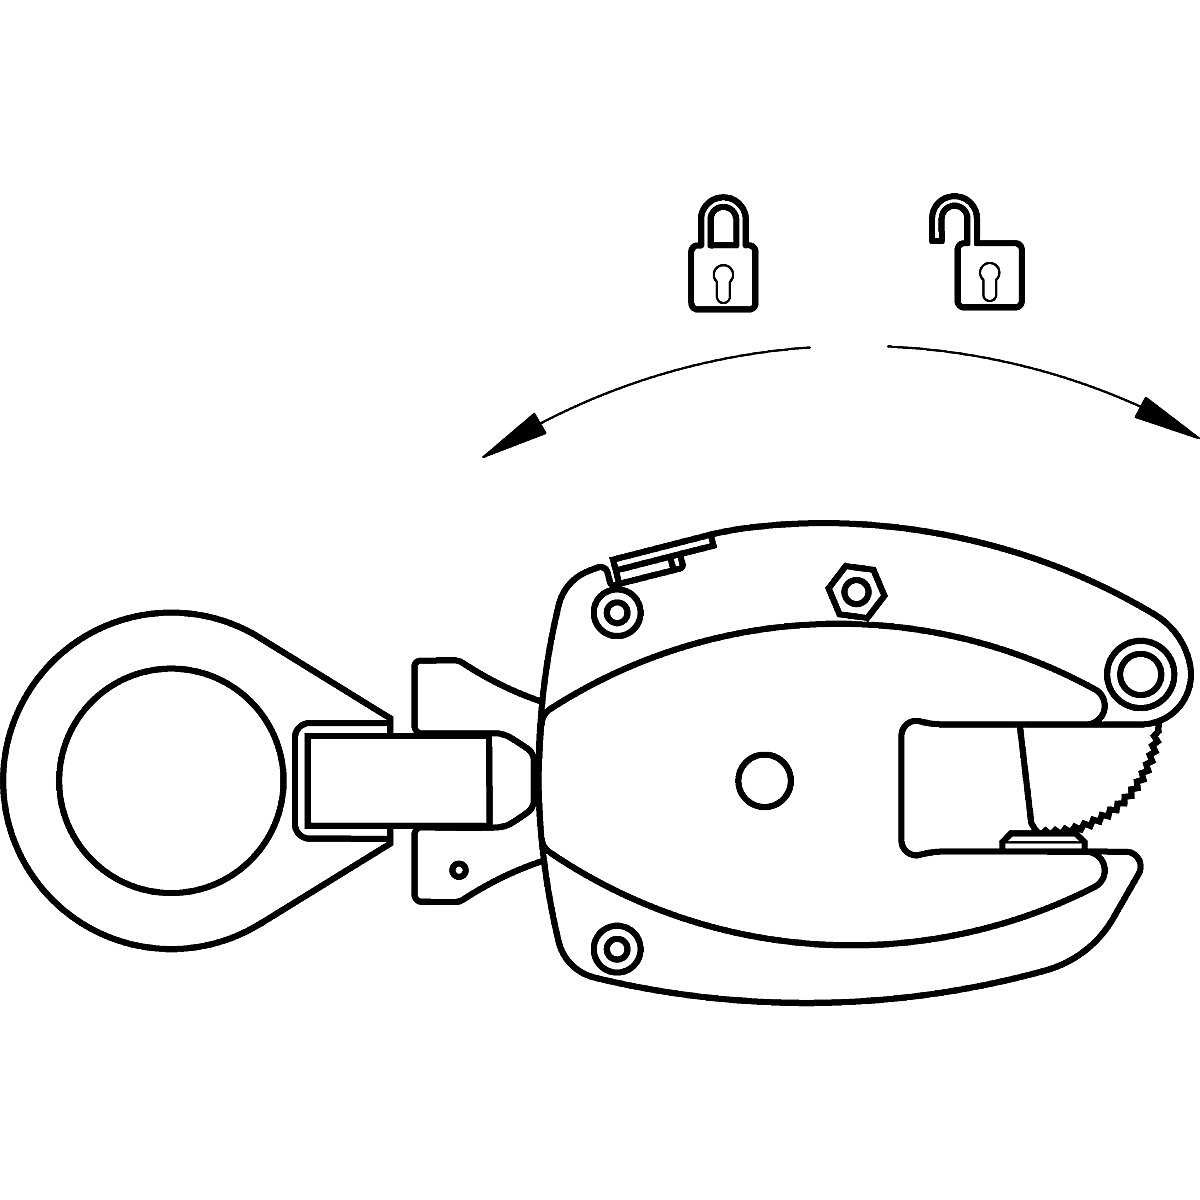 Grampo de carga modelo KL, utilização vertical – Pfeifer (Imagem do produto 5)-4